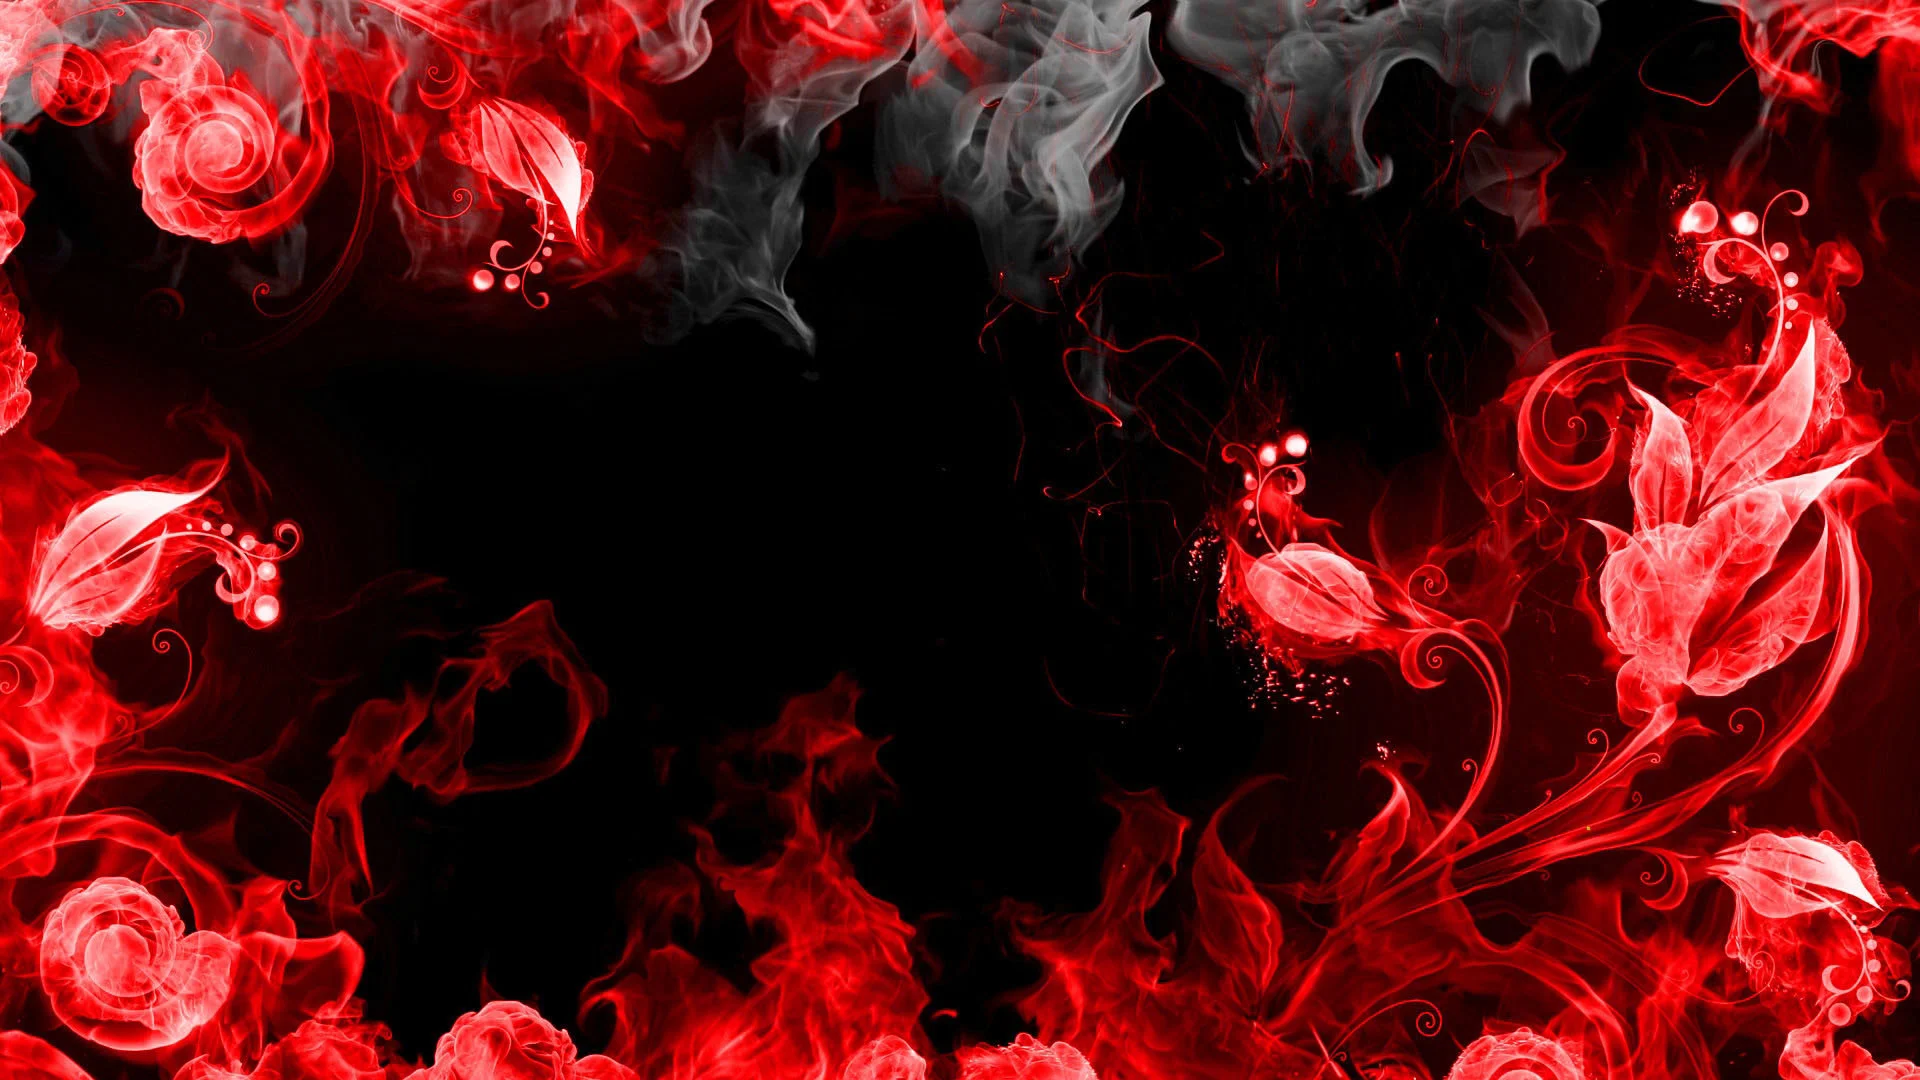 Tông màu đen đỏ trên desktop của bạn sẽ mang lại cảm giác nhiệt tình và sự nổi bật. Hãy tận hưởng hình ảnh nền desktop đen đỏ này và cho nó thêm phần sôi động cho mỗi ngày của bạn.